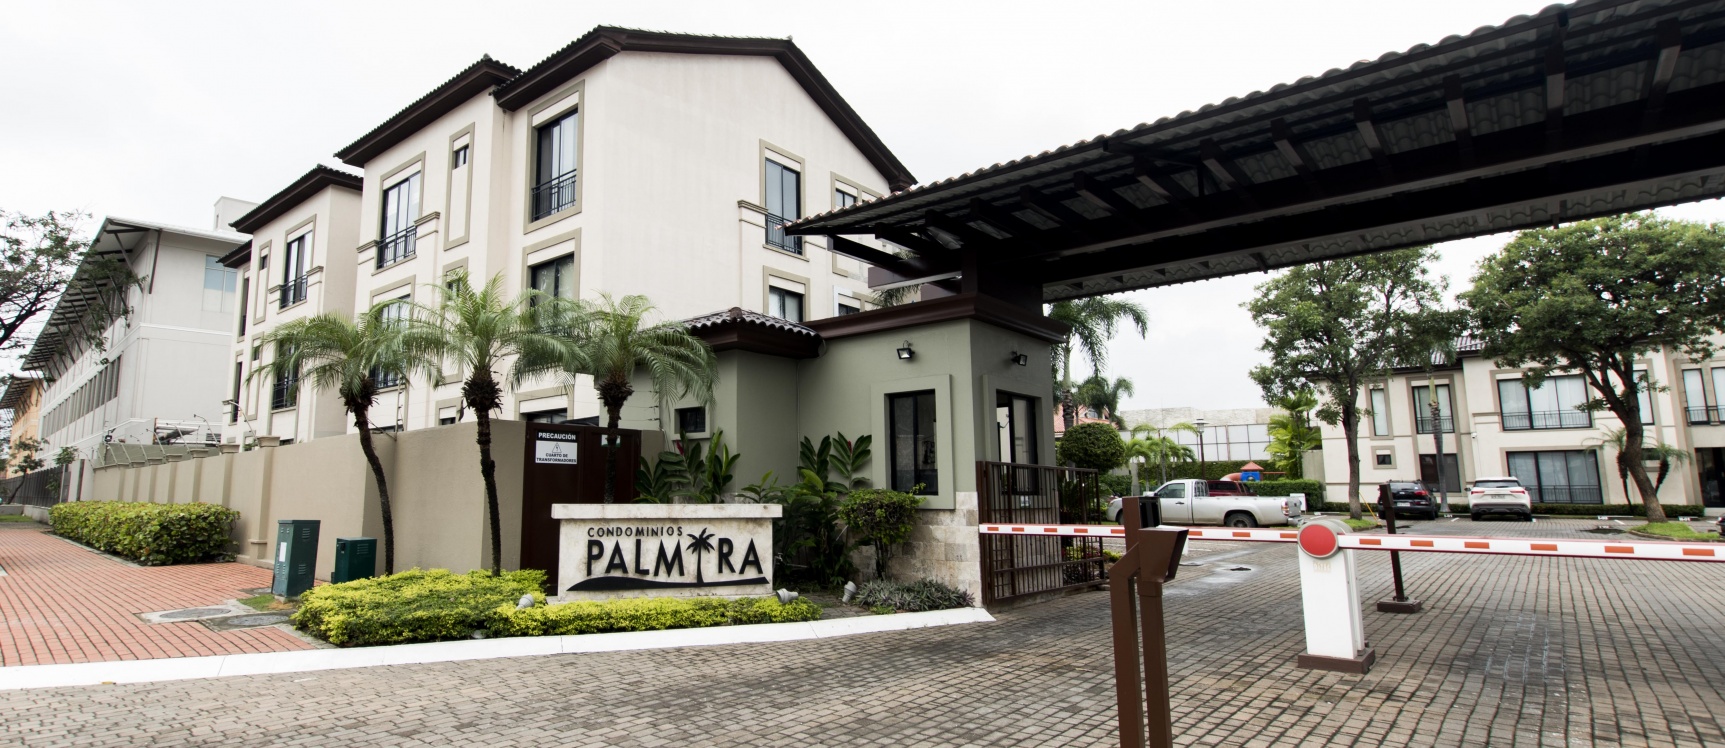 GeoBienes - Departamento en venta ubicado en Condominio Palmira, Vía Samborondón - Plusvalia Guayaquil Casas de venta y alquiler Inmobiliaria Ecuador